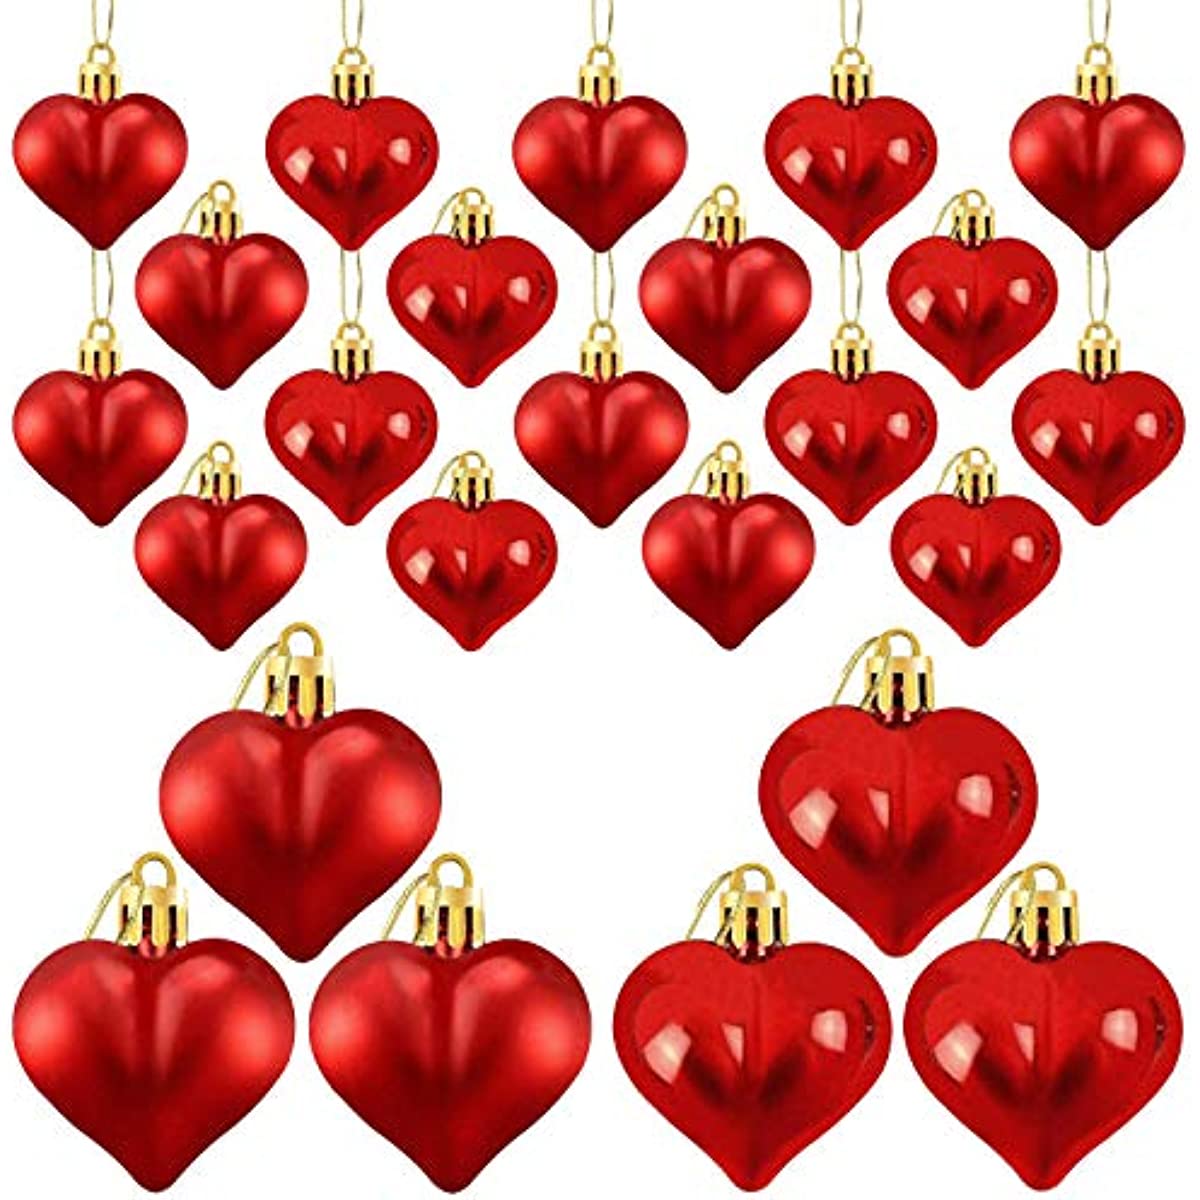 24 قطعة ، زخارف على شكل قلب لعيد الحب ، كرات قلب لامعة وغير لامعة لتعليق الزينة لعيد الحب والزفاف والذكرى السنوية وحفلات المنزل